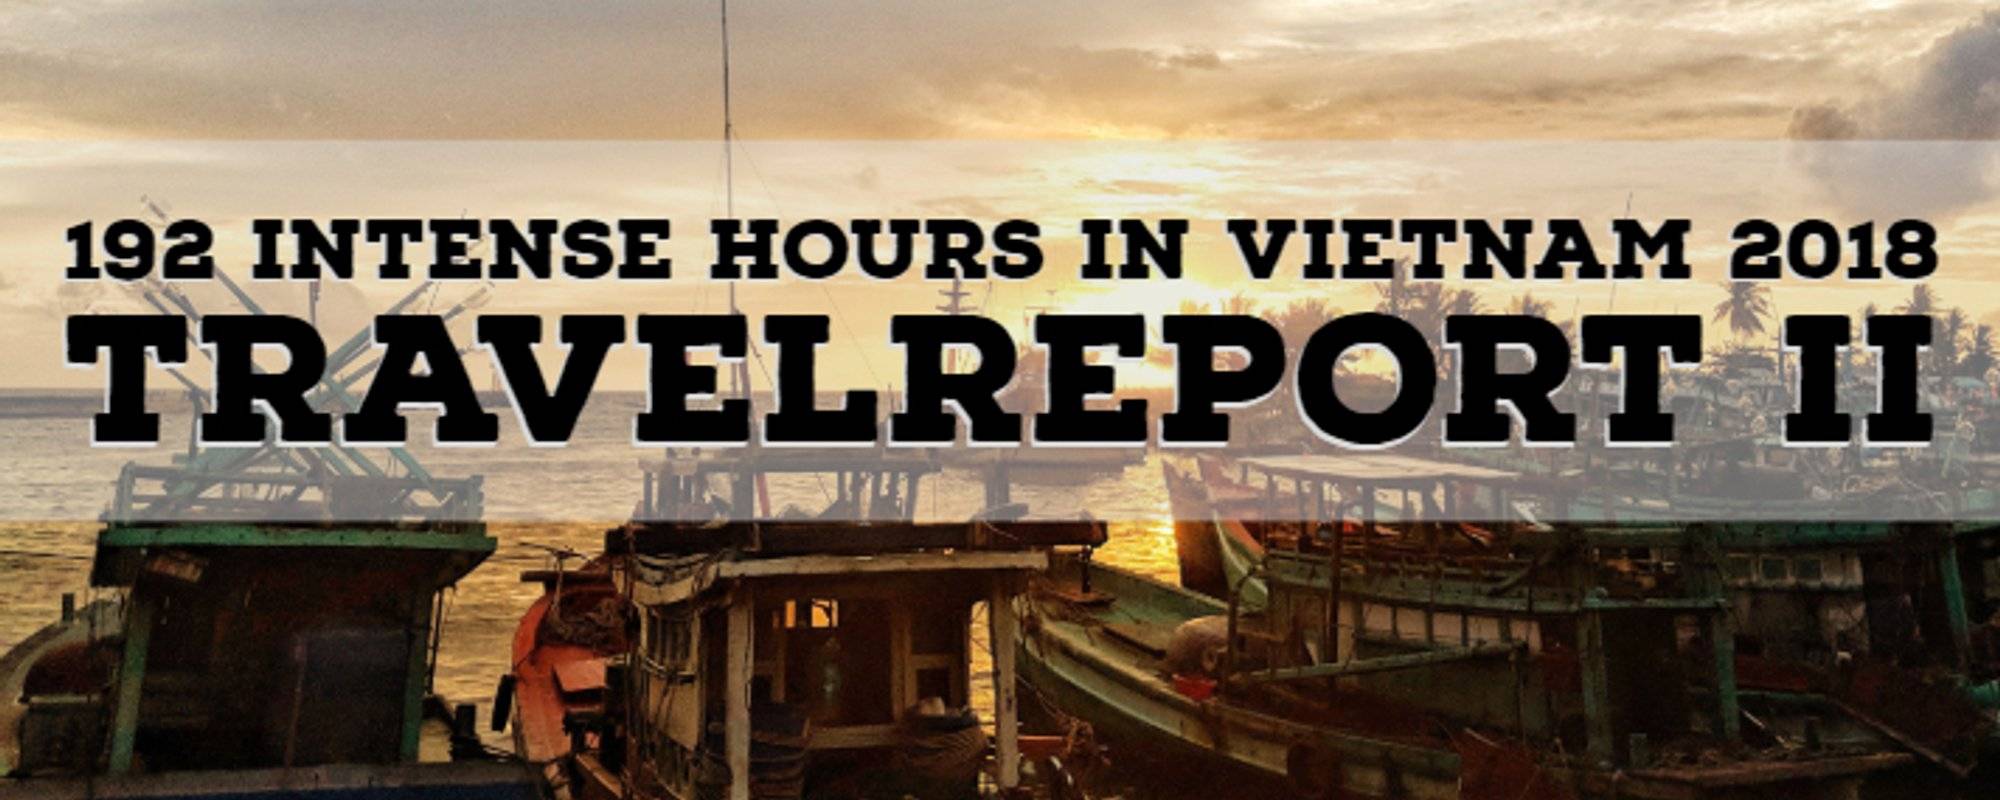 192 intense hours in Vietnam #2